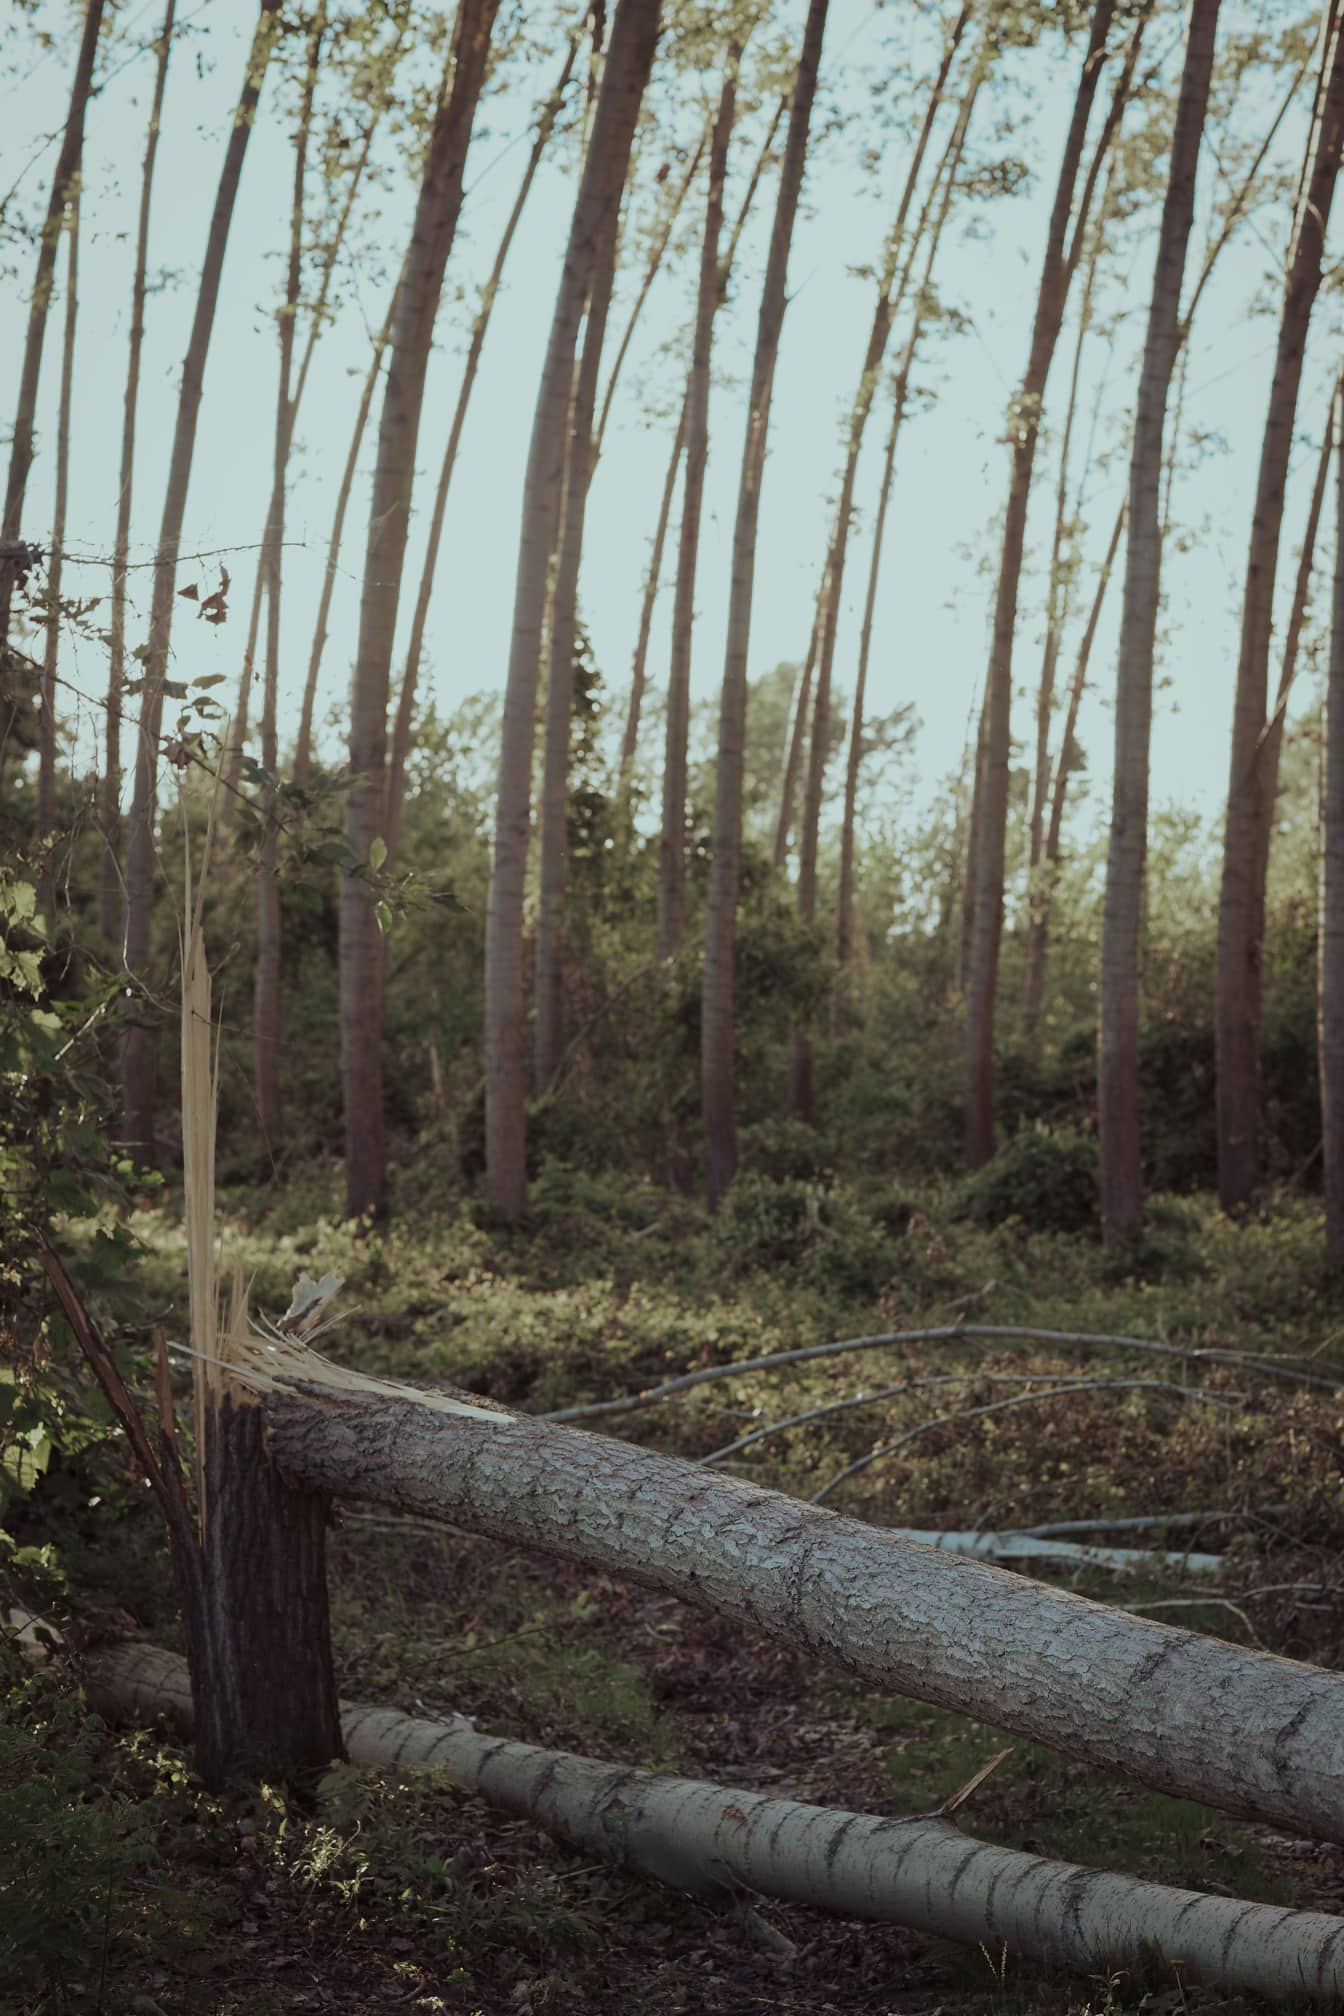 Σπασμένοι κορμοί λεύκας στο έδαφος στο δάσος